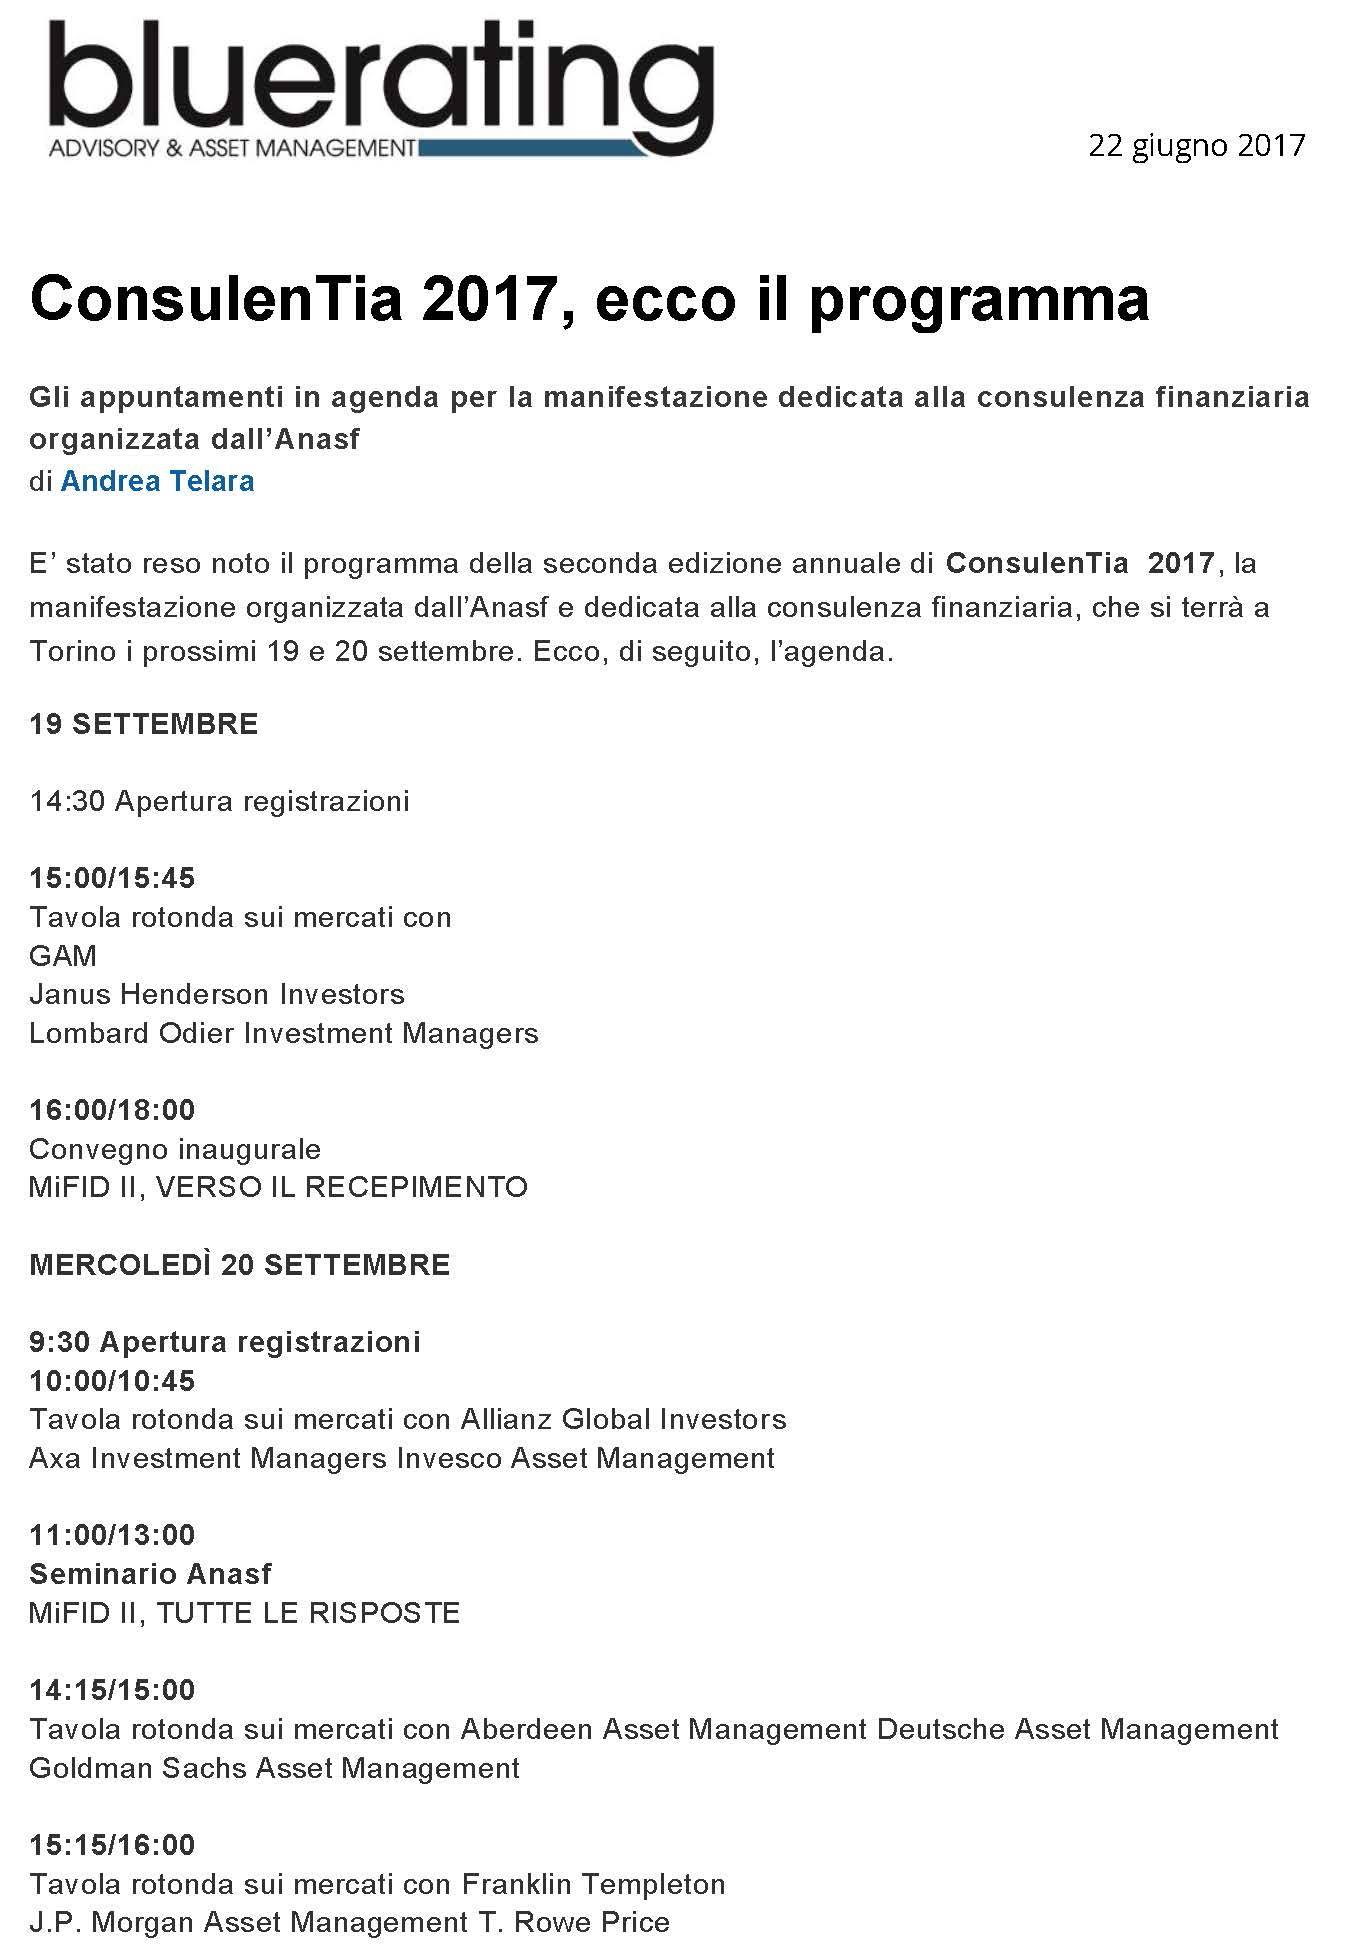 ConsulenTia 2017, ecco il programma